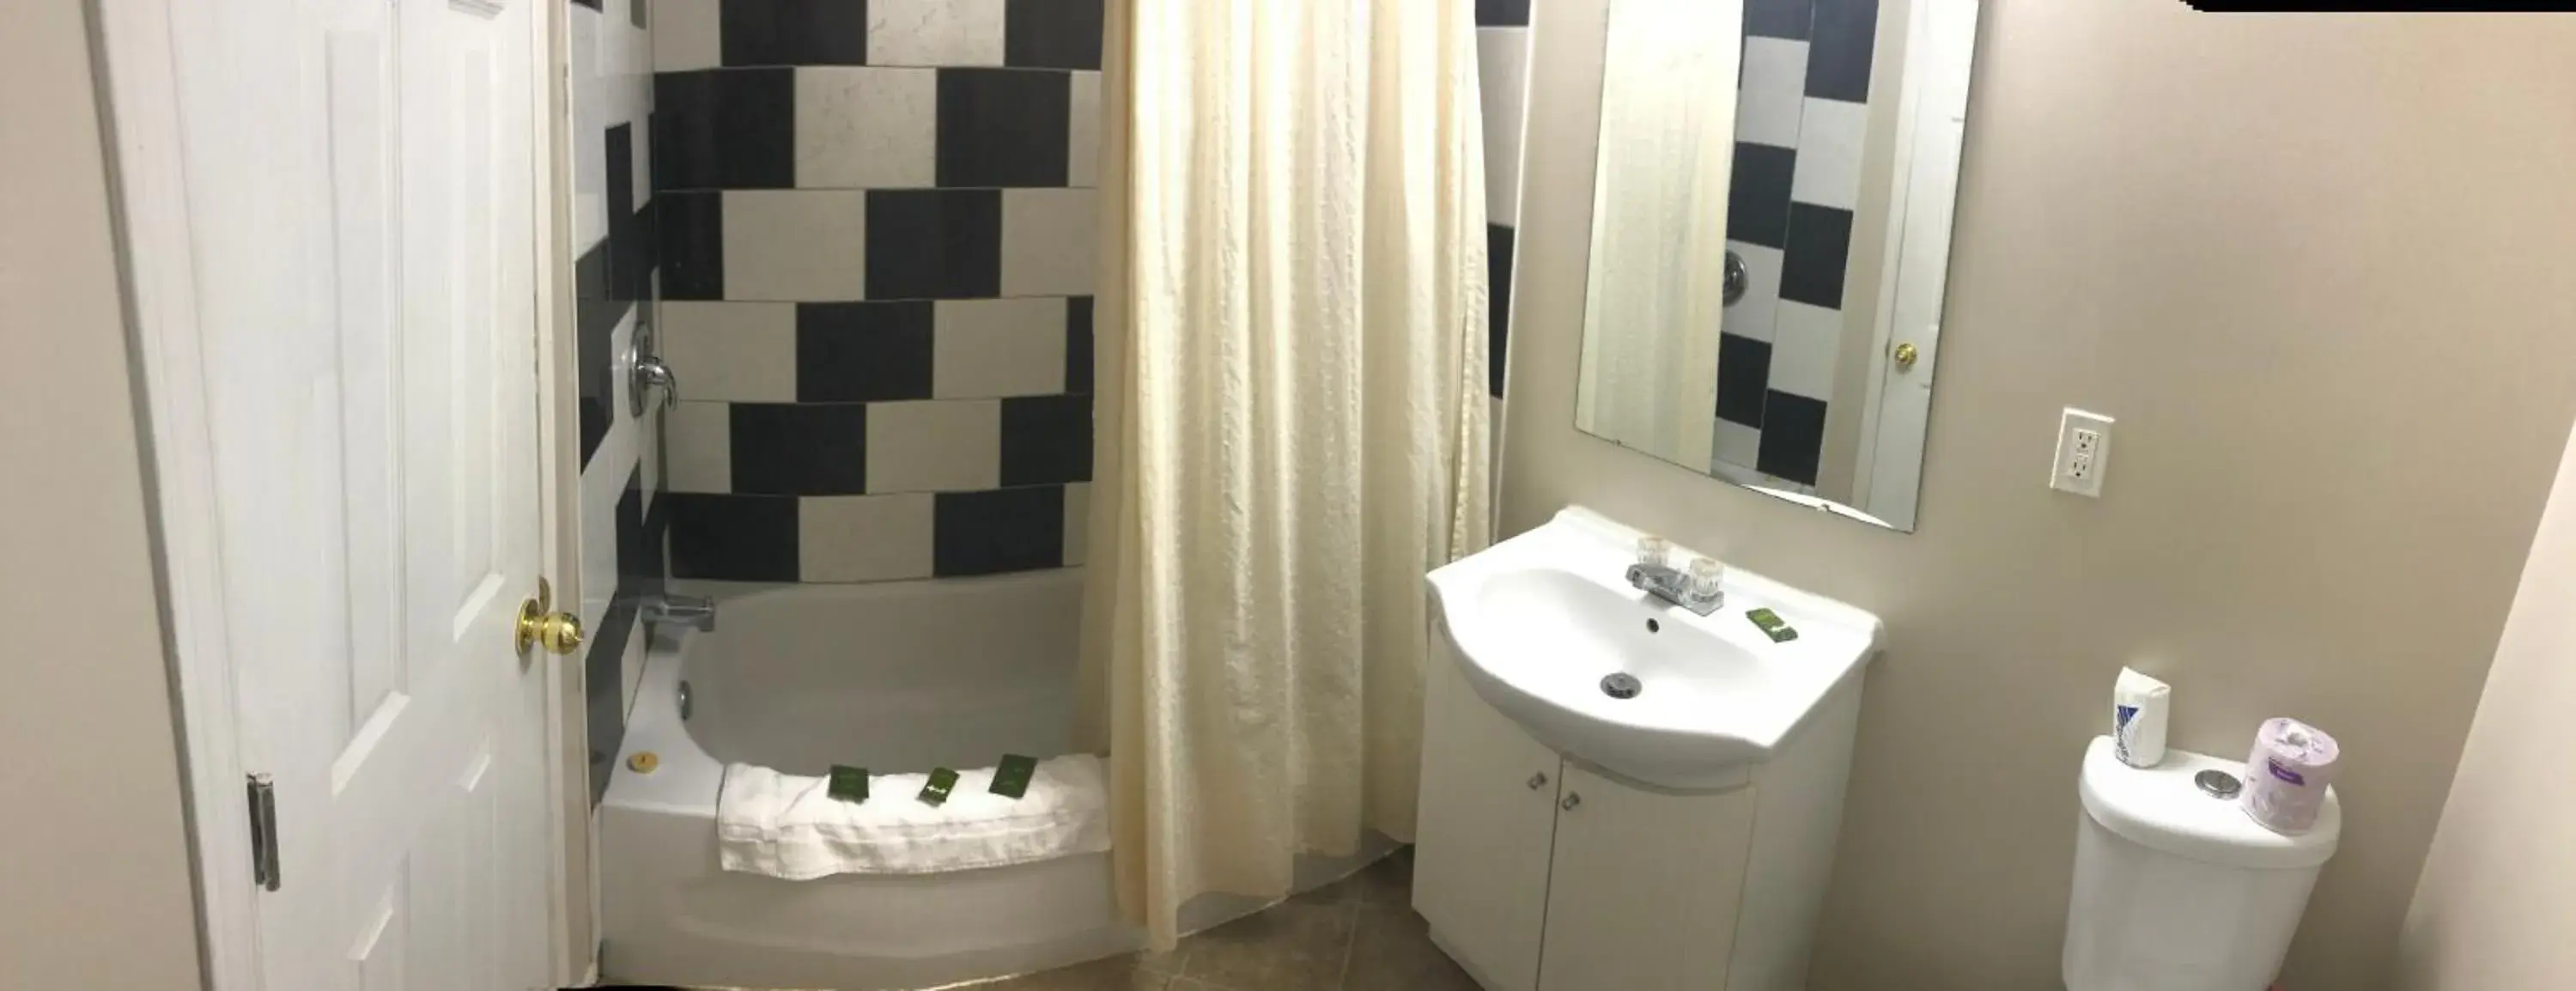 Bathroom in Guest Inn Motel